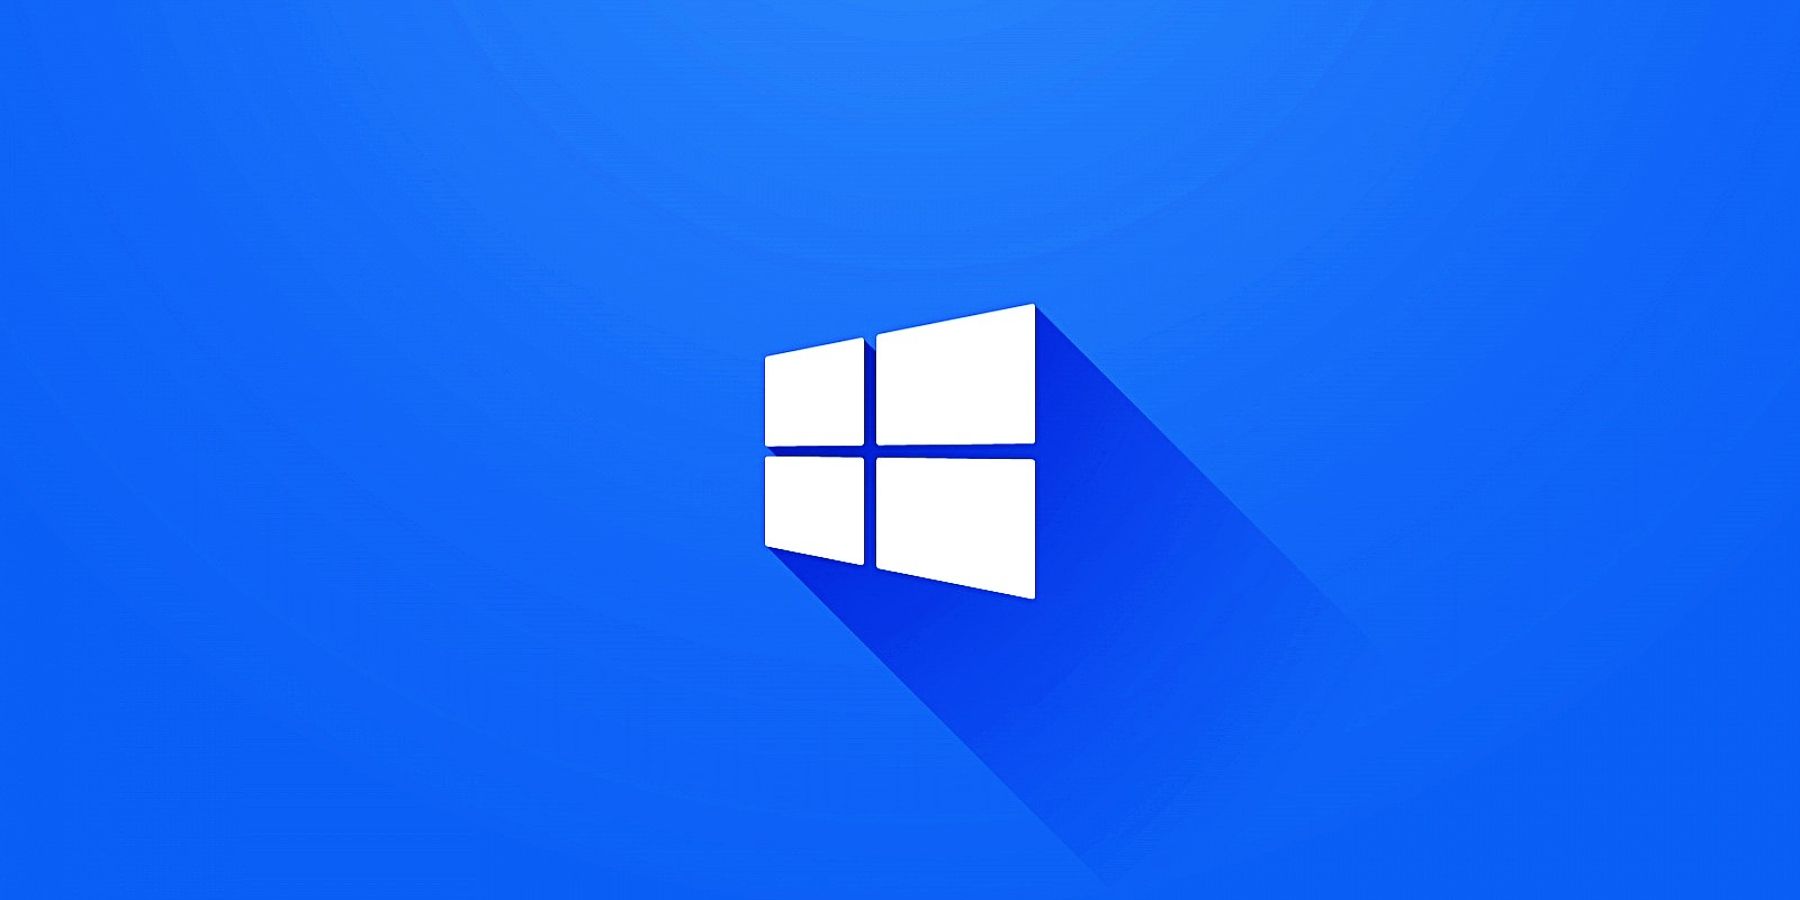 Windows 12 là hệ điều hành mới nhất từ Microsoft. Với hiệu suất vượt trội và tính năng tiên tiến, hệ điều hành này sẽ mang đến cho bạn những trải nghiệm tuyệt vời trong công việc và giải trí. Hãy sẵn sàng để tận hưởng thiết kế mới và các tính năng đột phá của nó.